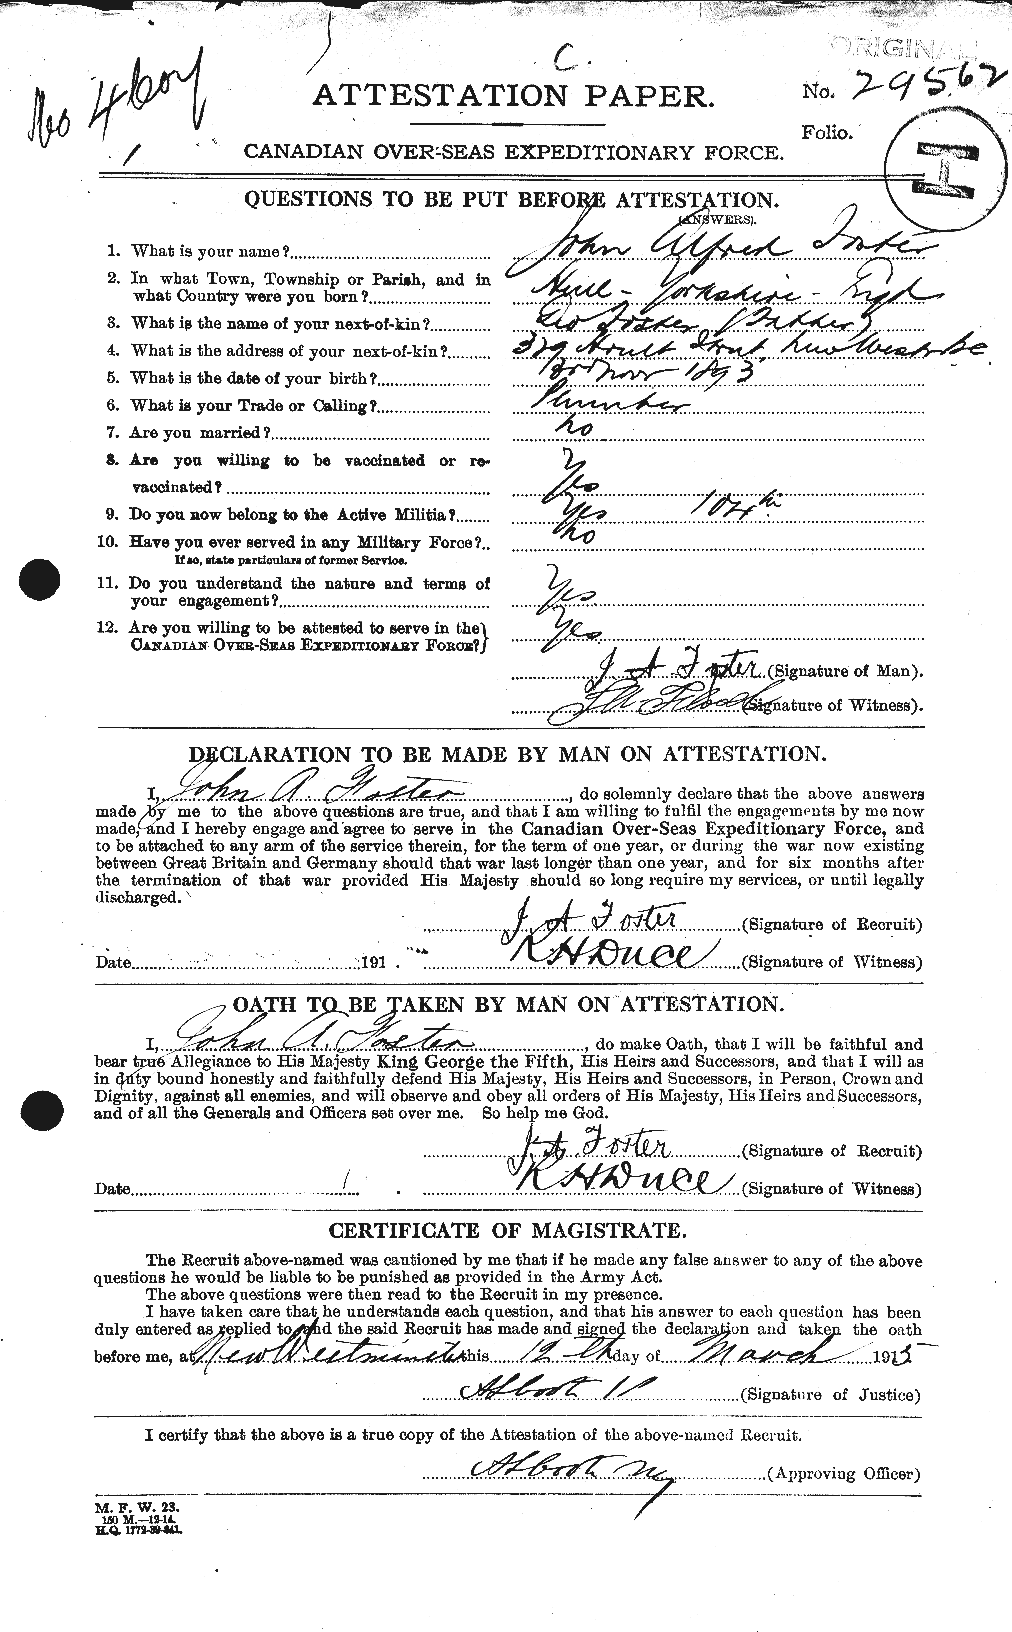 Dossiers du Personnel de la Première Guerre mondiale - CEC 333353a